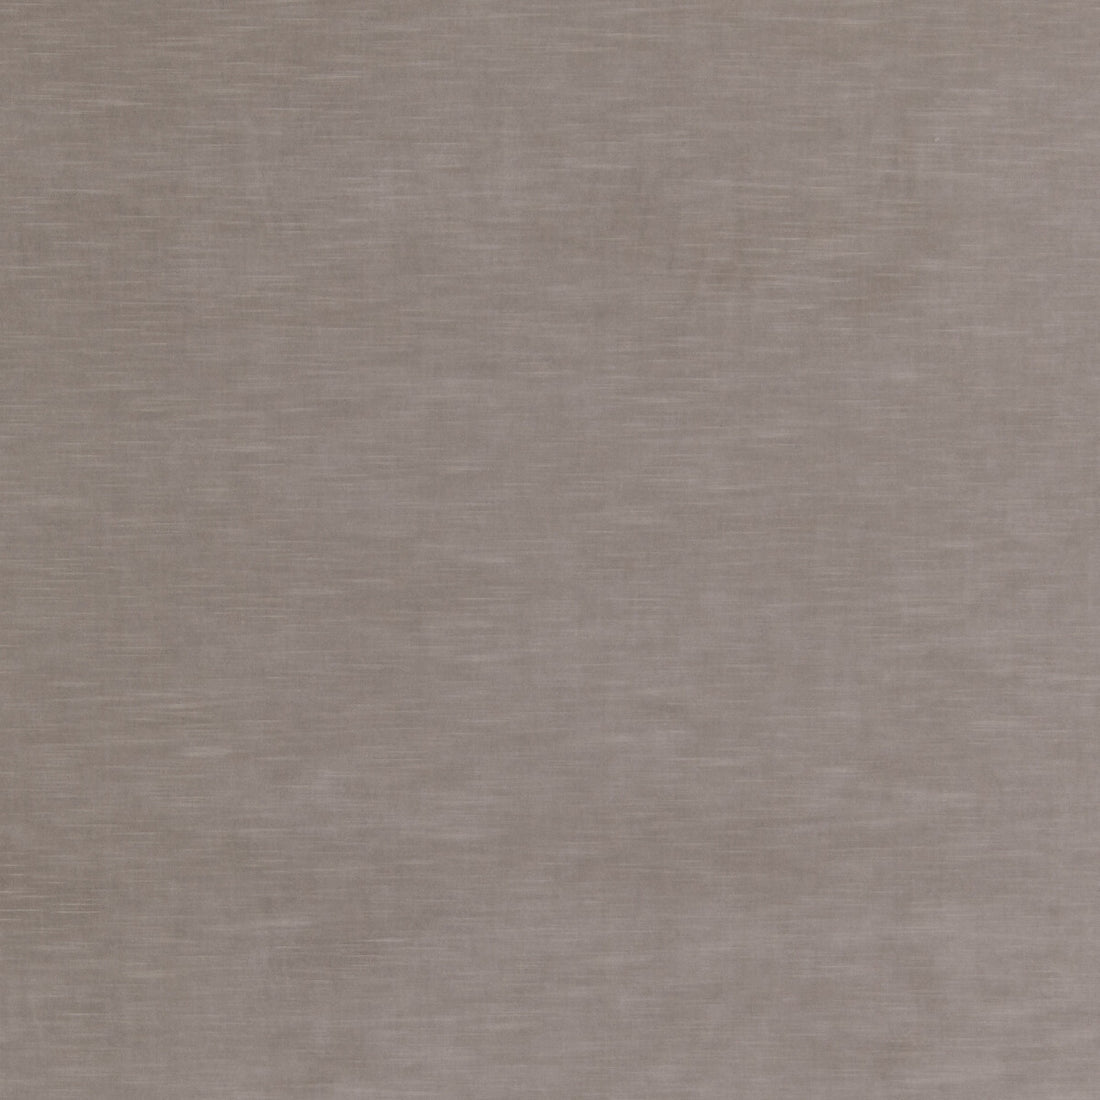 Quintessential Velvet fabric in ash color - pattern ED85359.904.0 - by Threads in the Quintessential Velvet collection